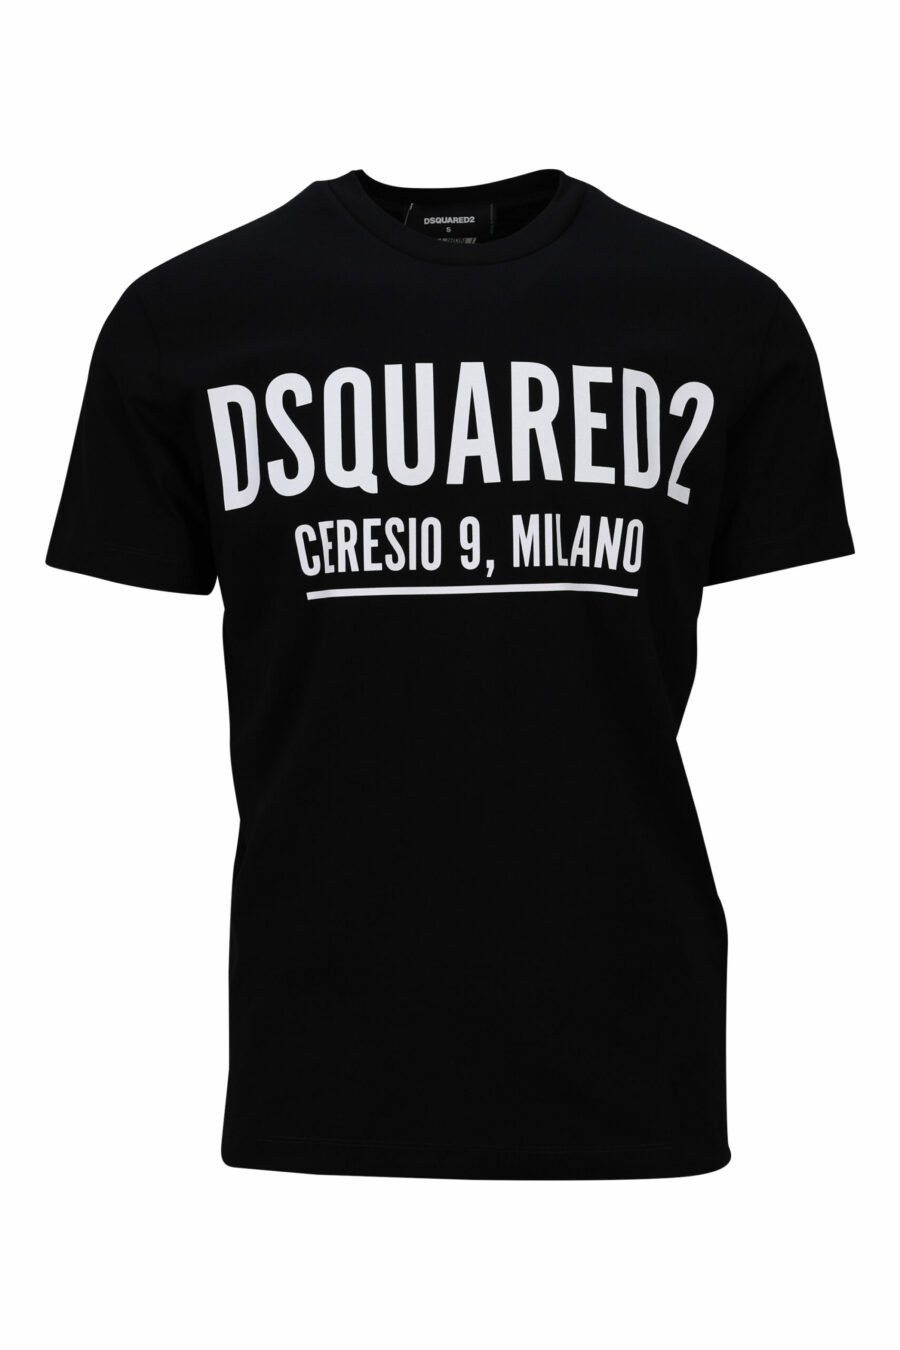 T-shirt preta com o maxilogo "ceresio 9 milano" - 8054148504984 scaled